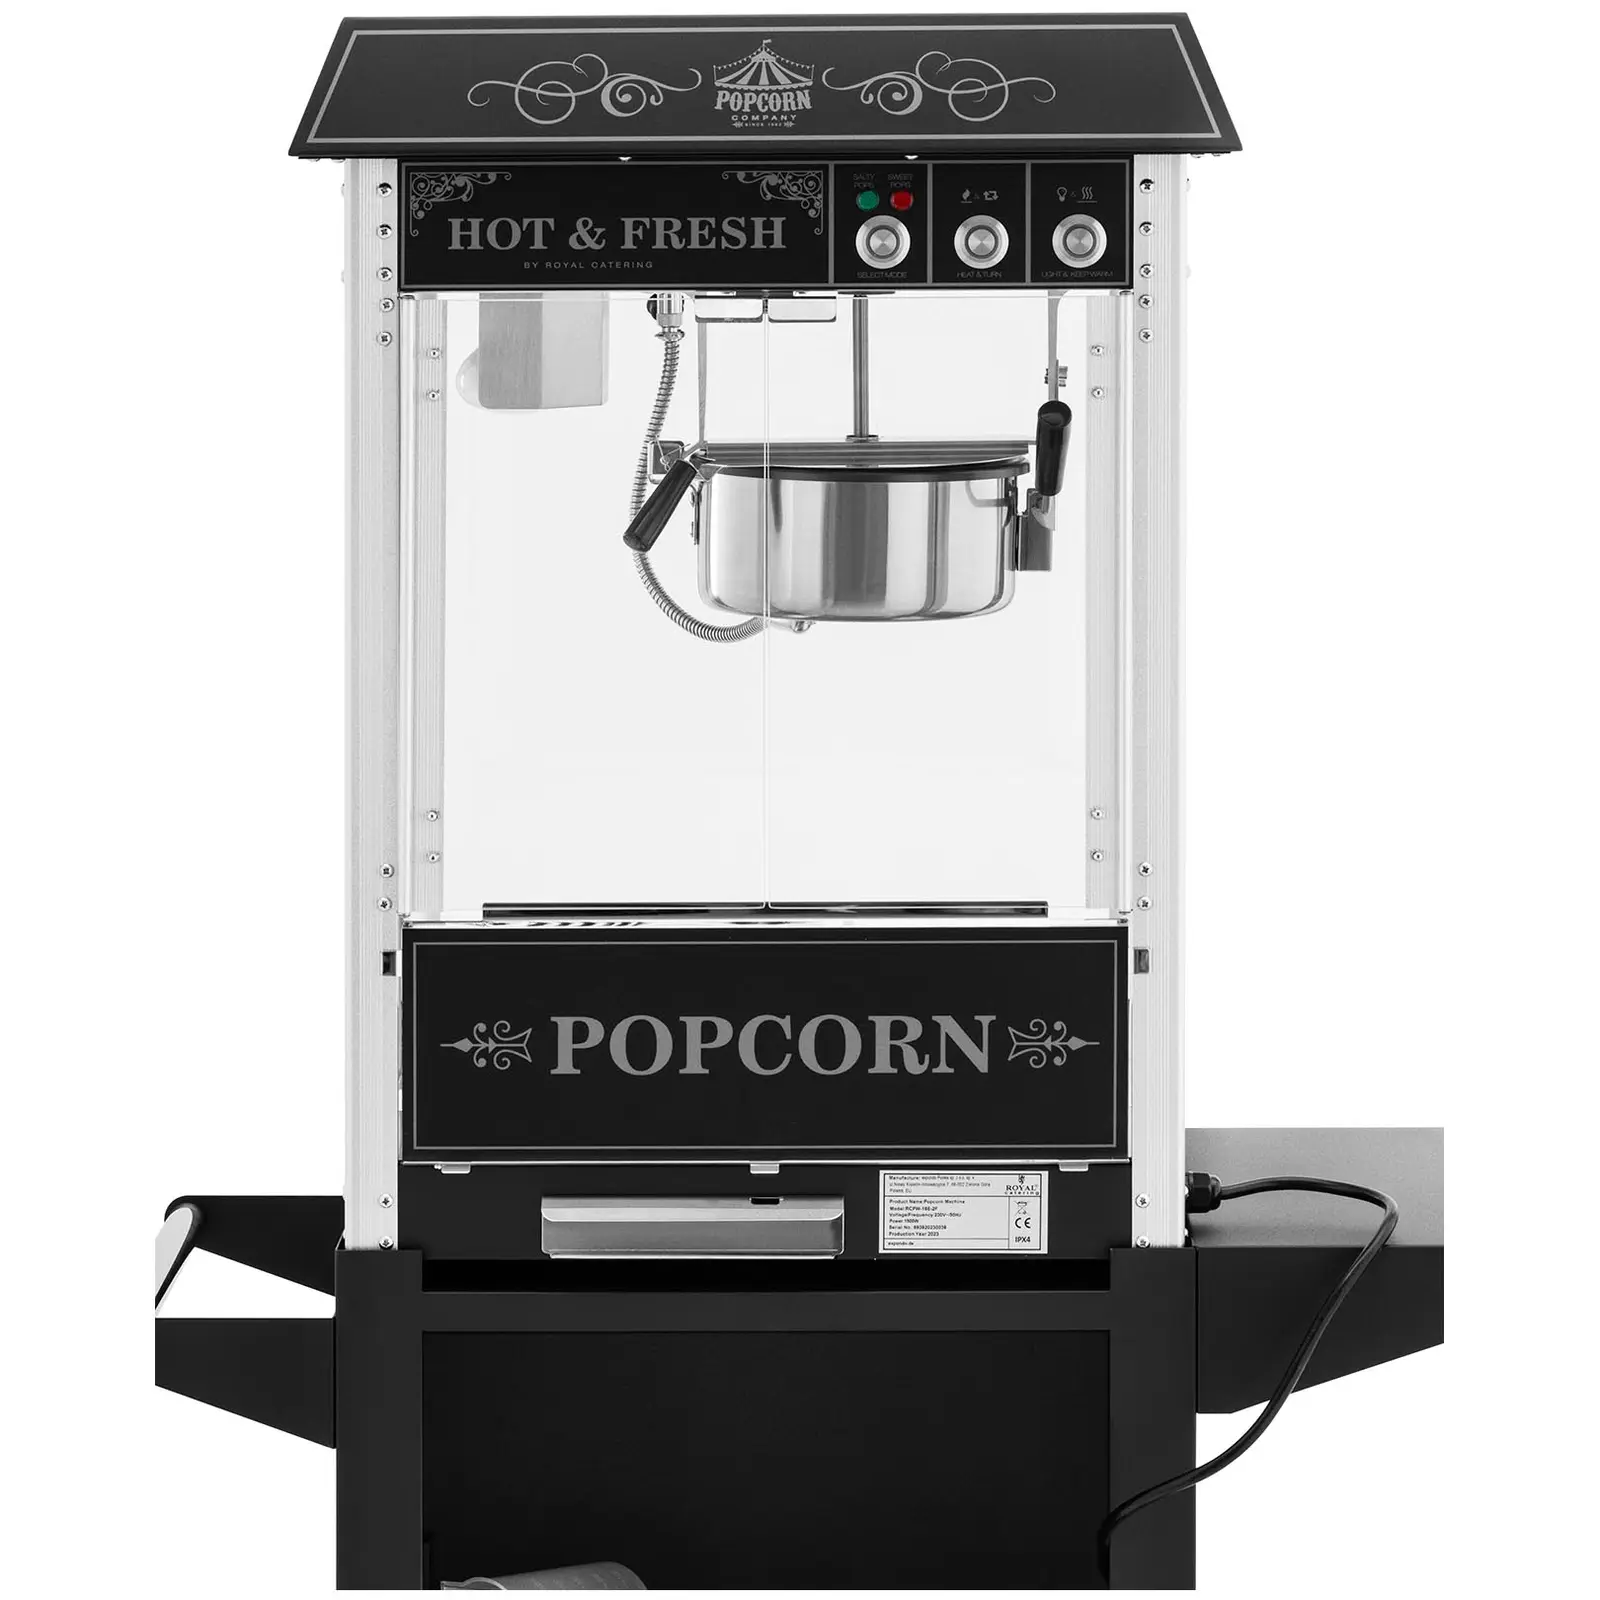 Maszyna do popcornu z wózkiem - design retro - 150/180°C - czarna - Royal Catering